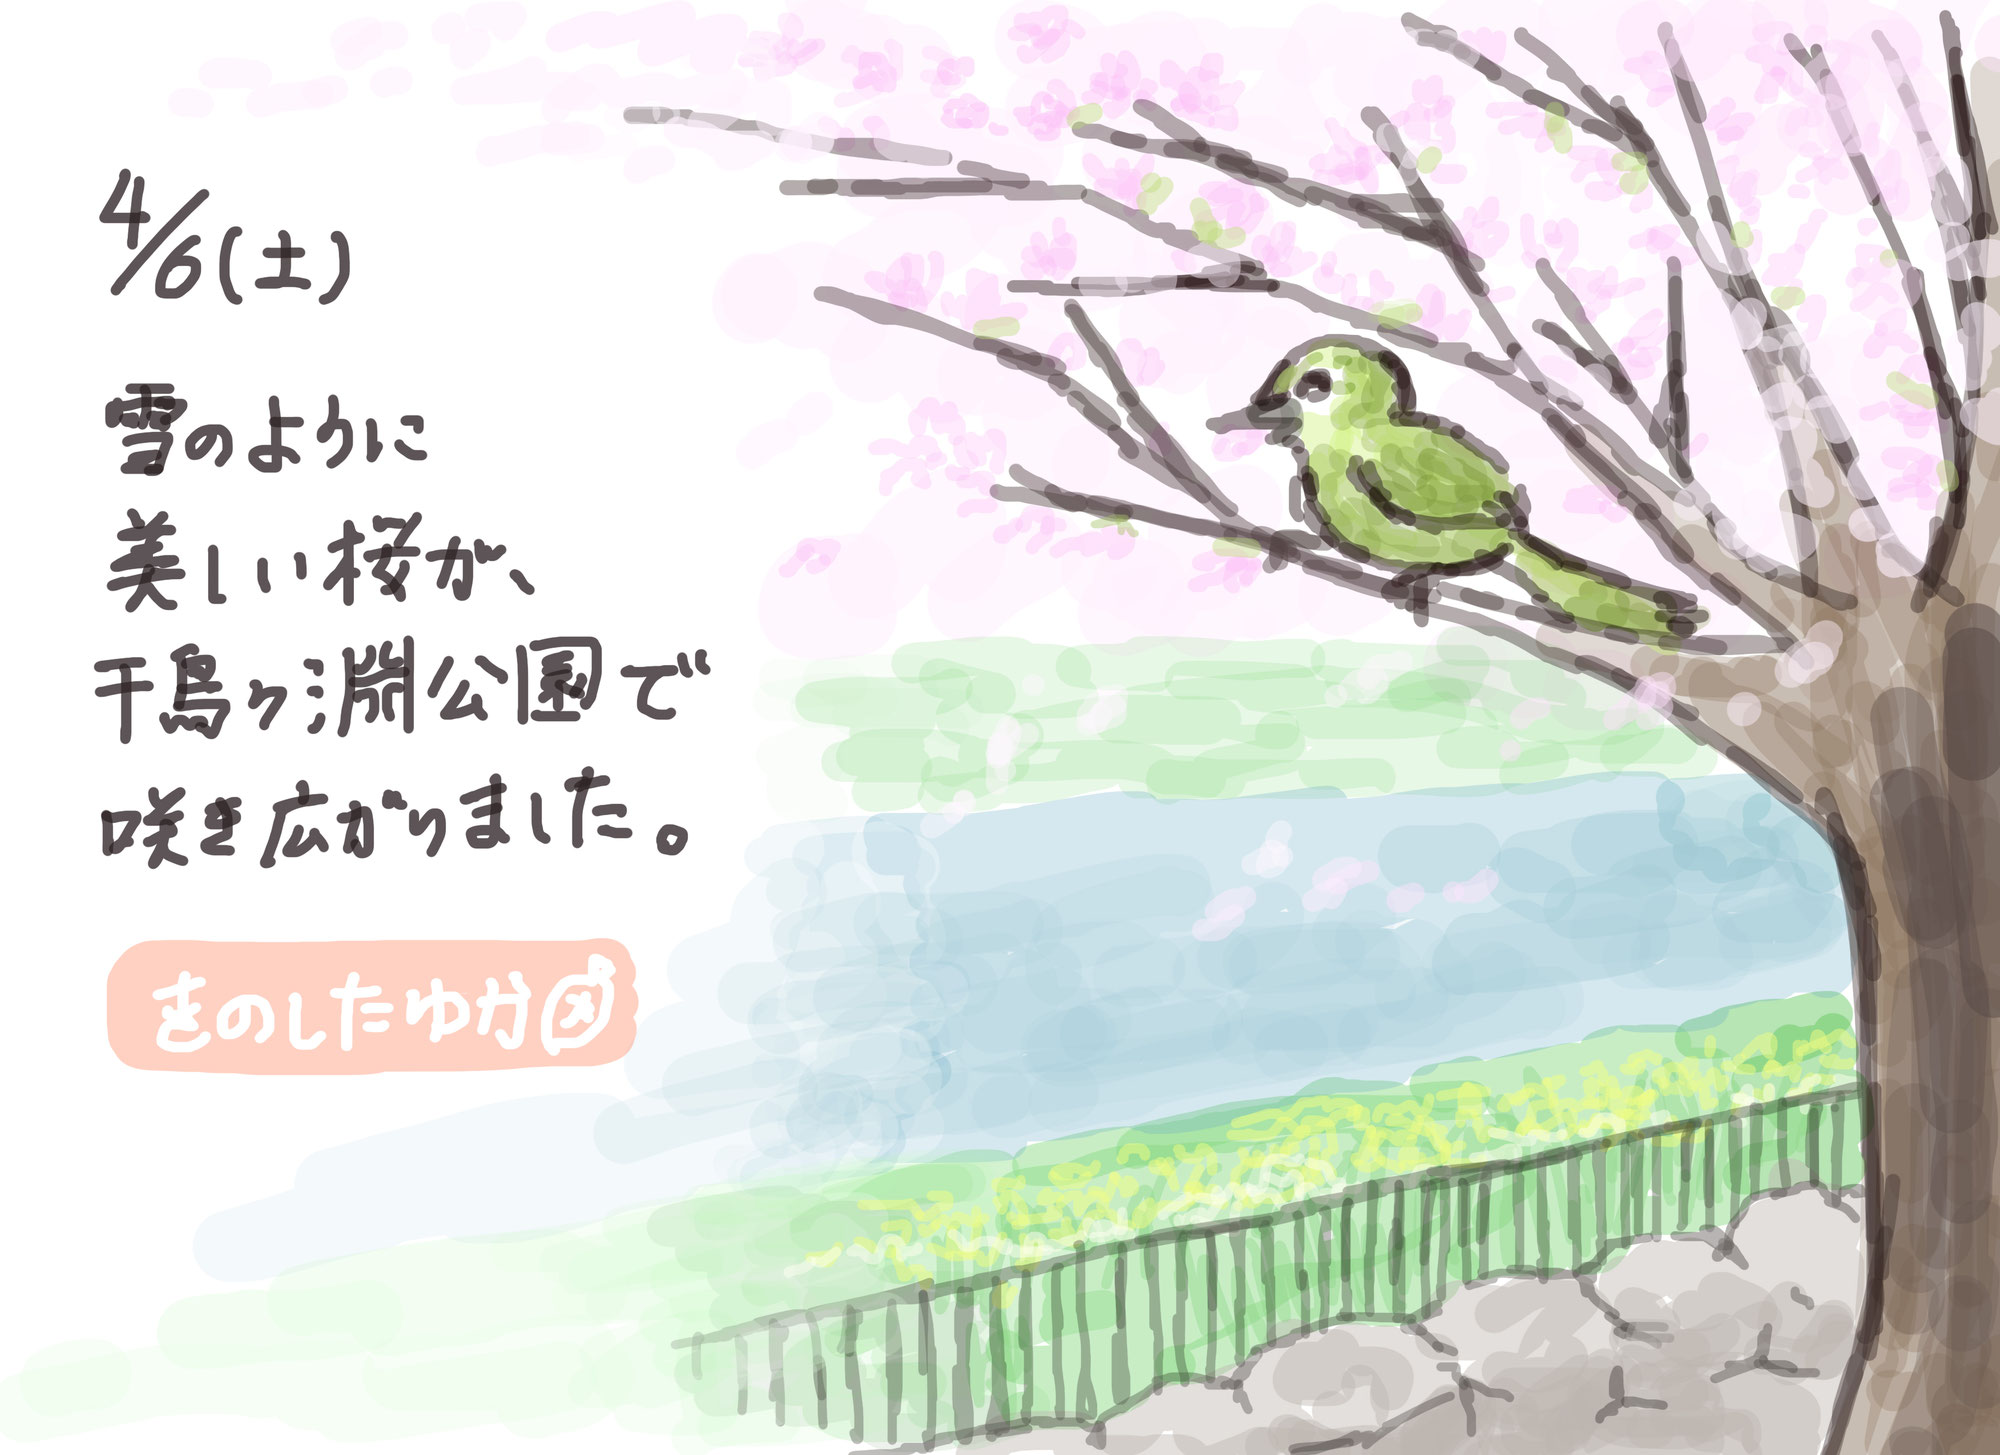 【手描きイラスト・ノウハウ】お花見の絵はがき風イラストはこうしてできます♪〜桜とメジロ〜